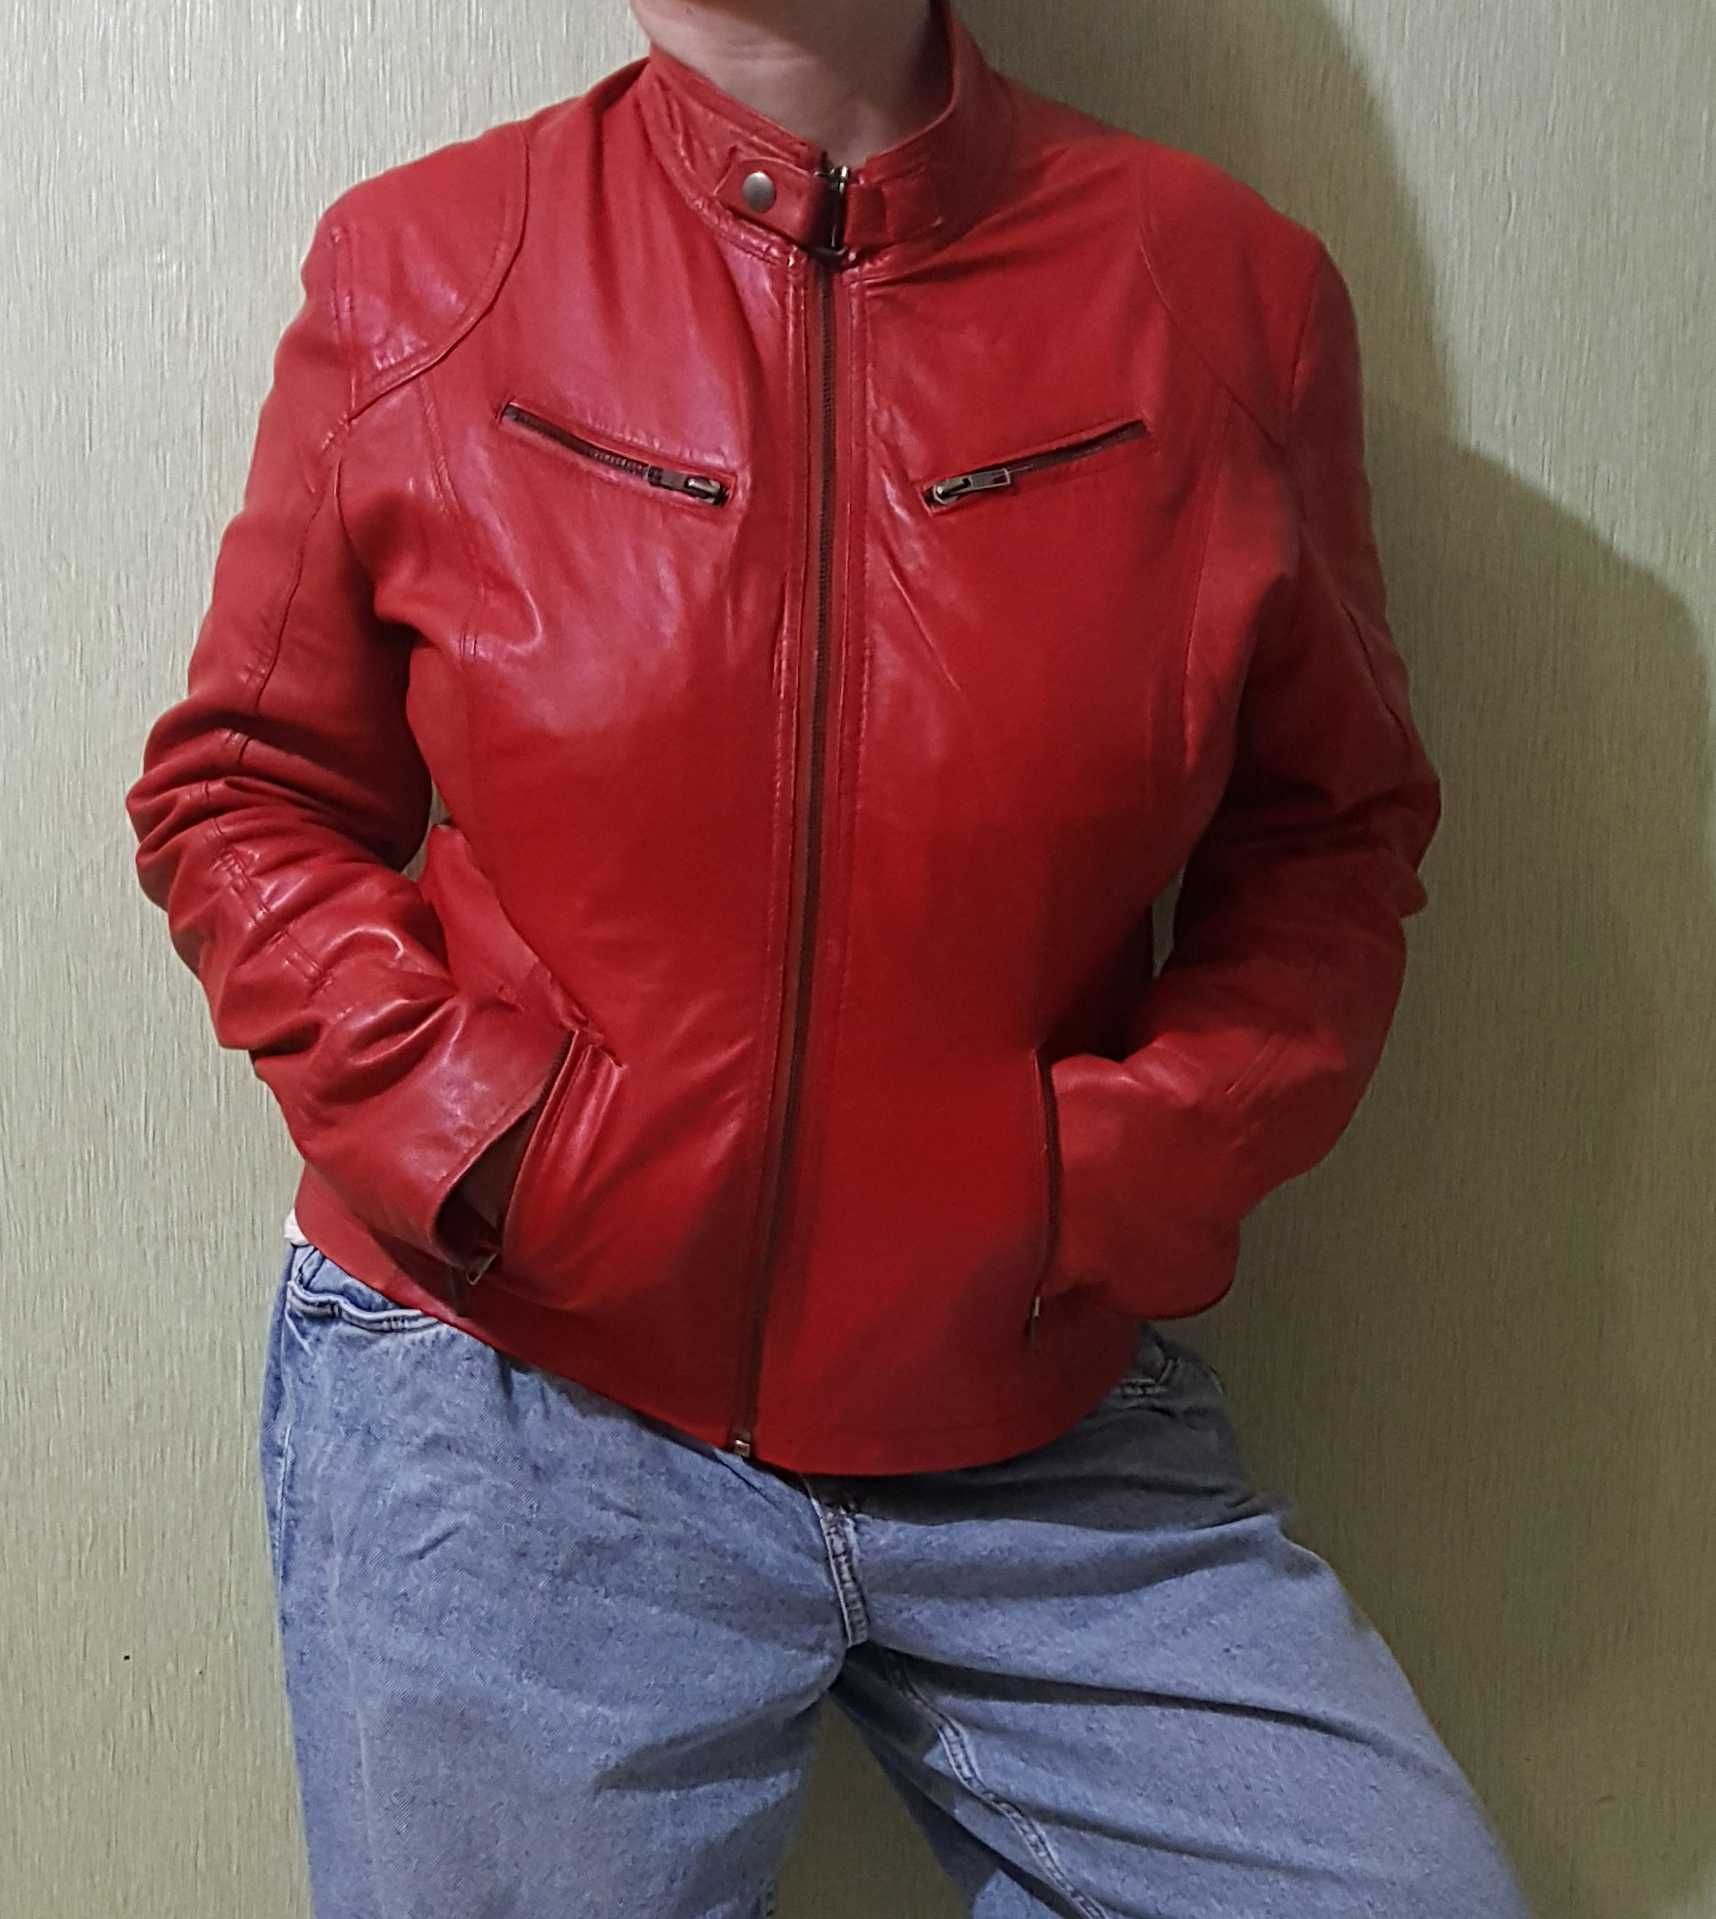 Червона шкіряна куртка, красная кожанка